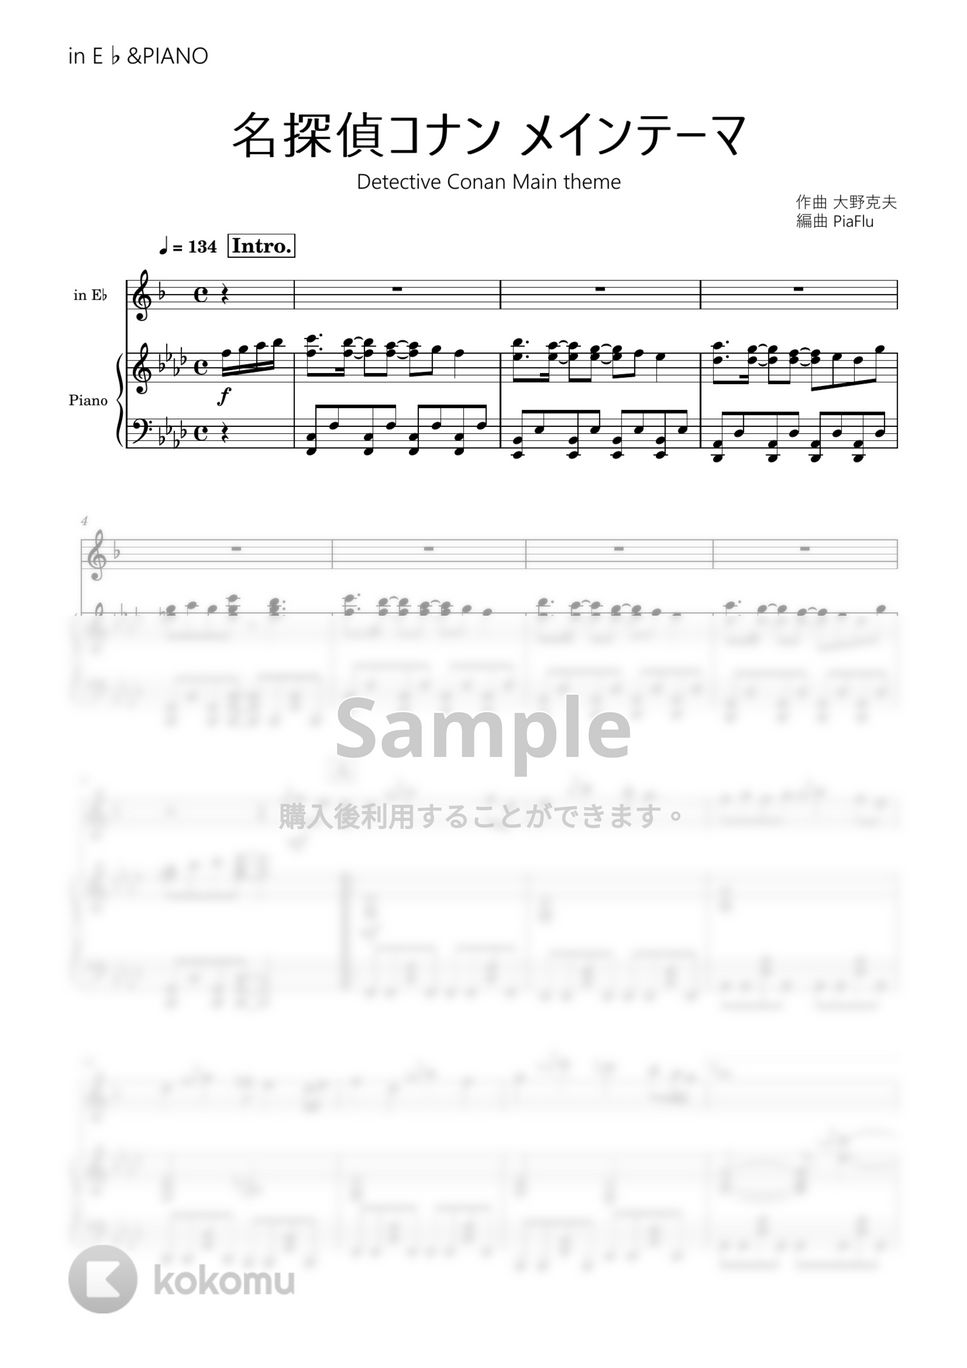 アニメ「名探偵コナン」より - メインテーマ (in E♭&ピアノ伴奏) by PiaFlu